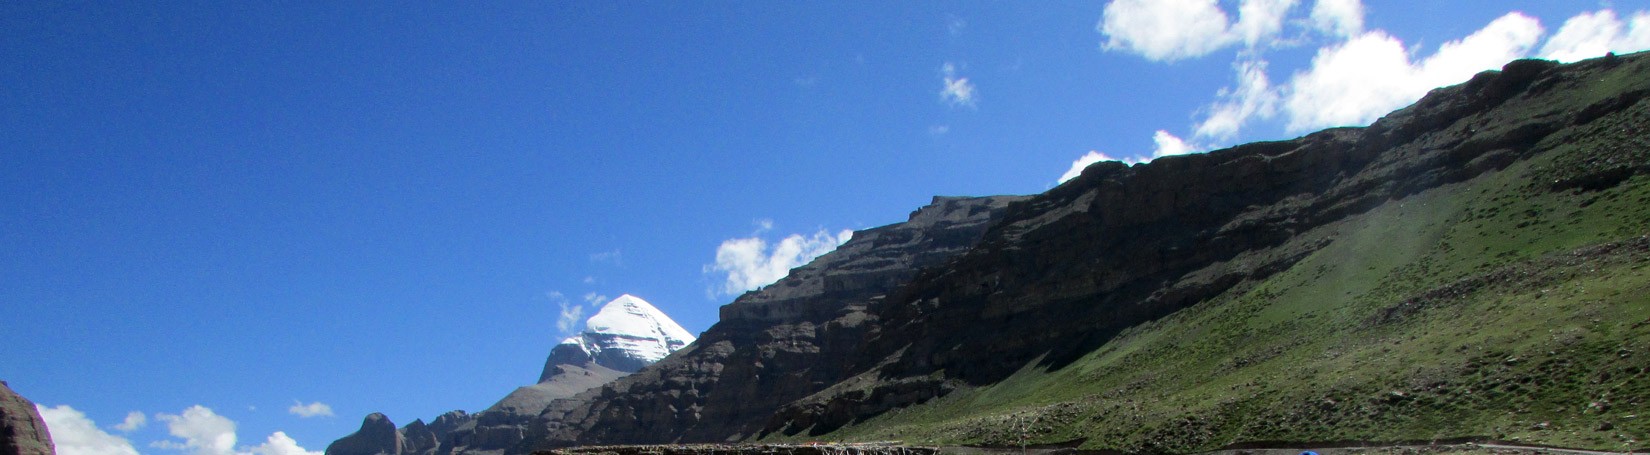 Wesak Valley in Tibet